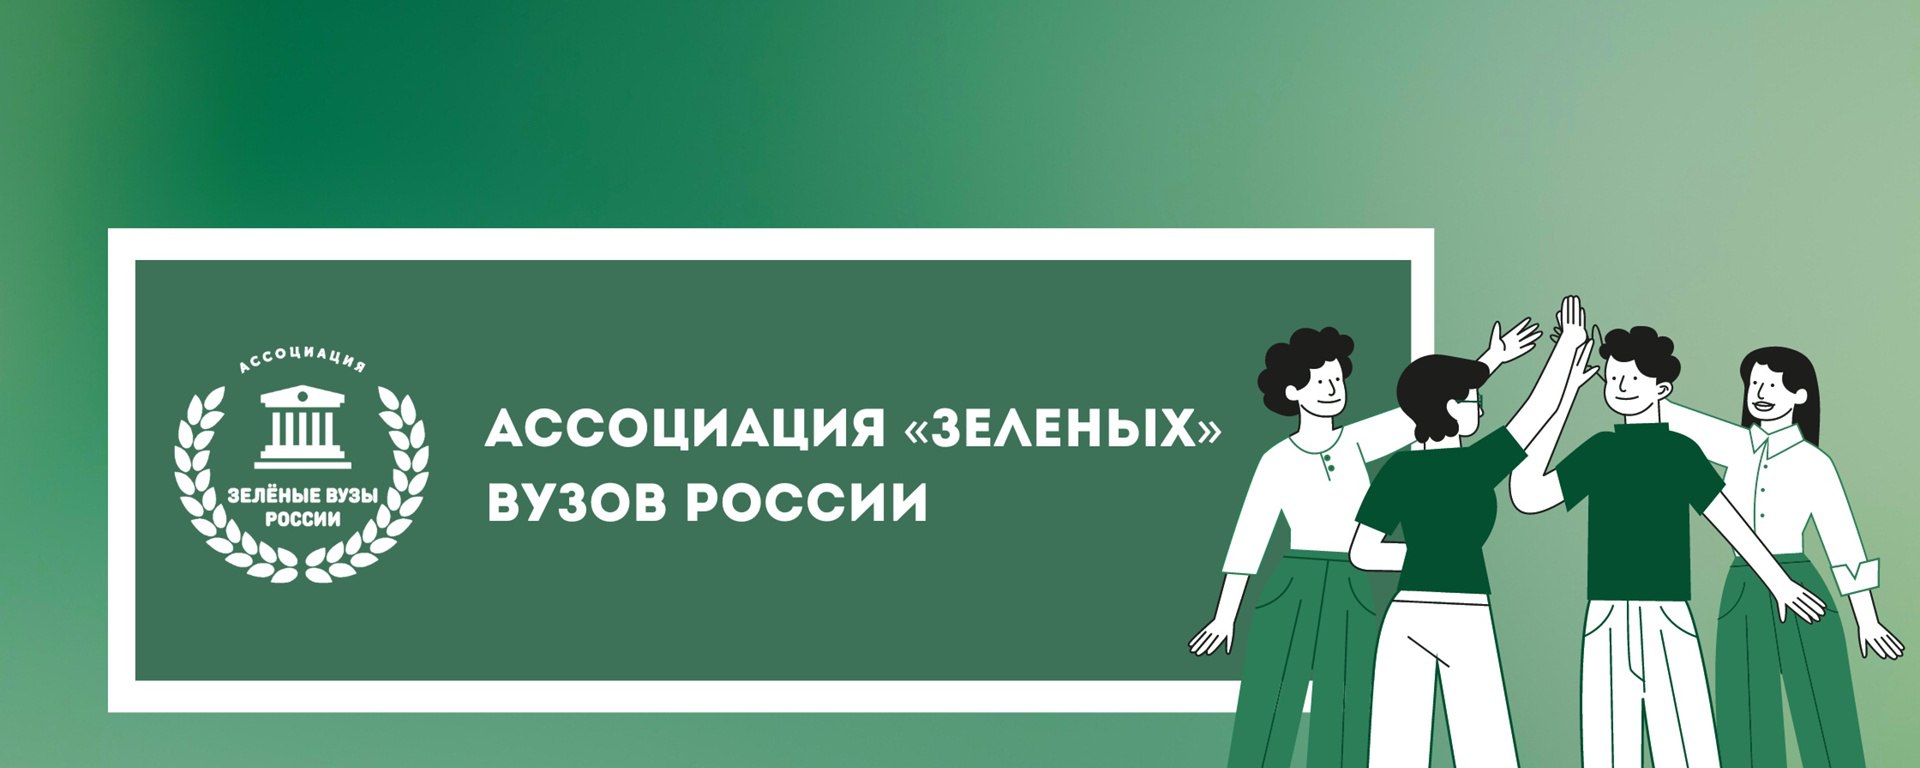 Менделеевский университет присоединился к Ассоциации «зеленых» вузов России 